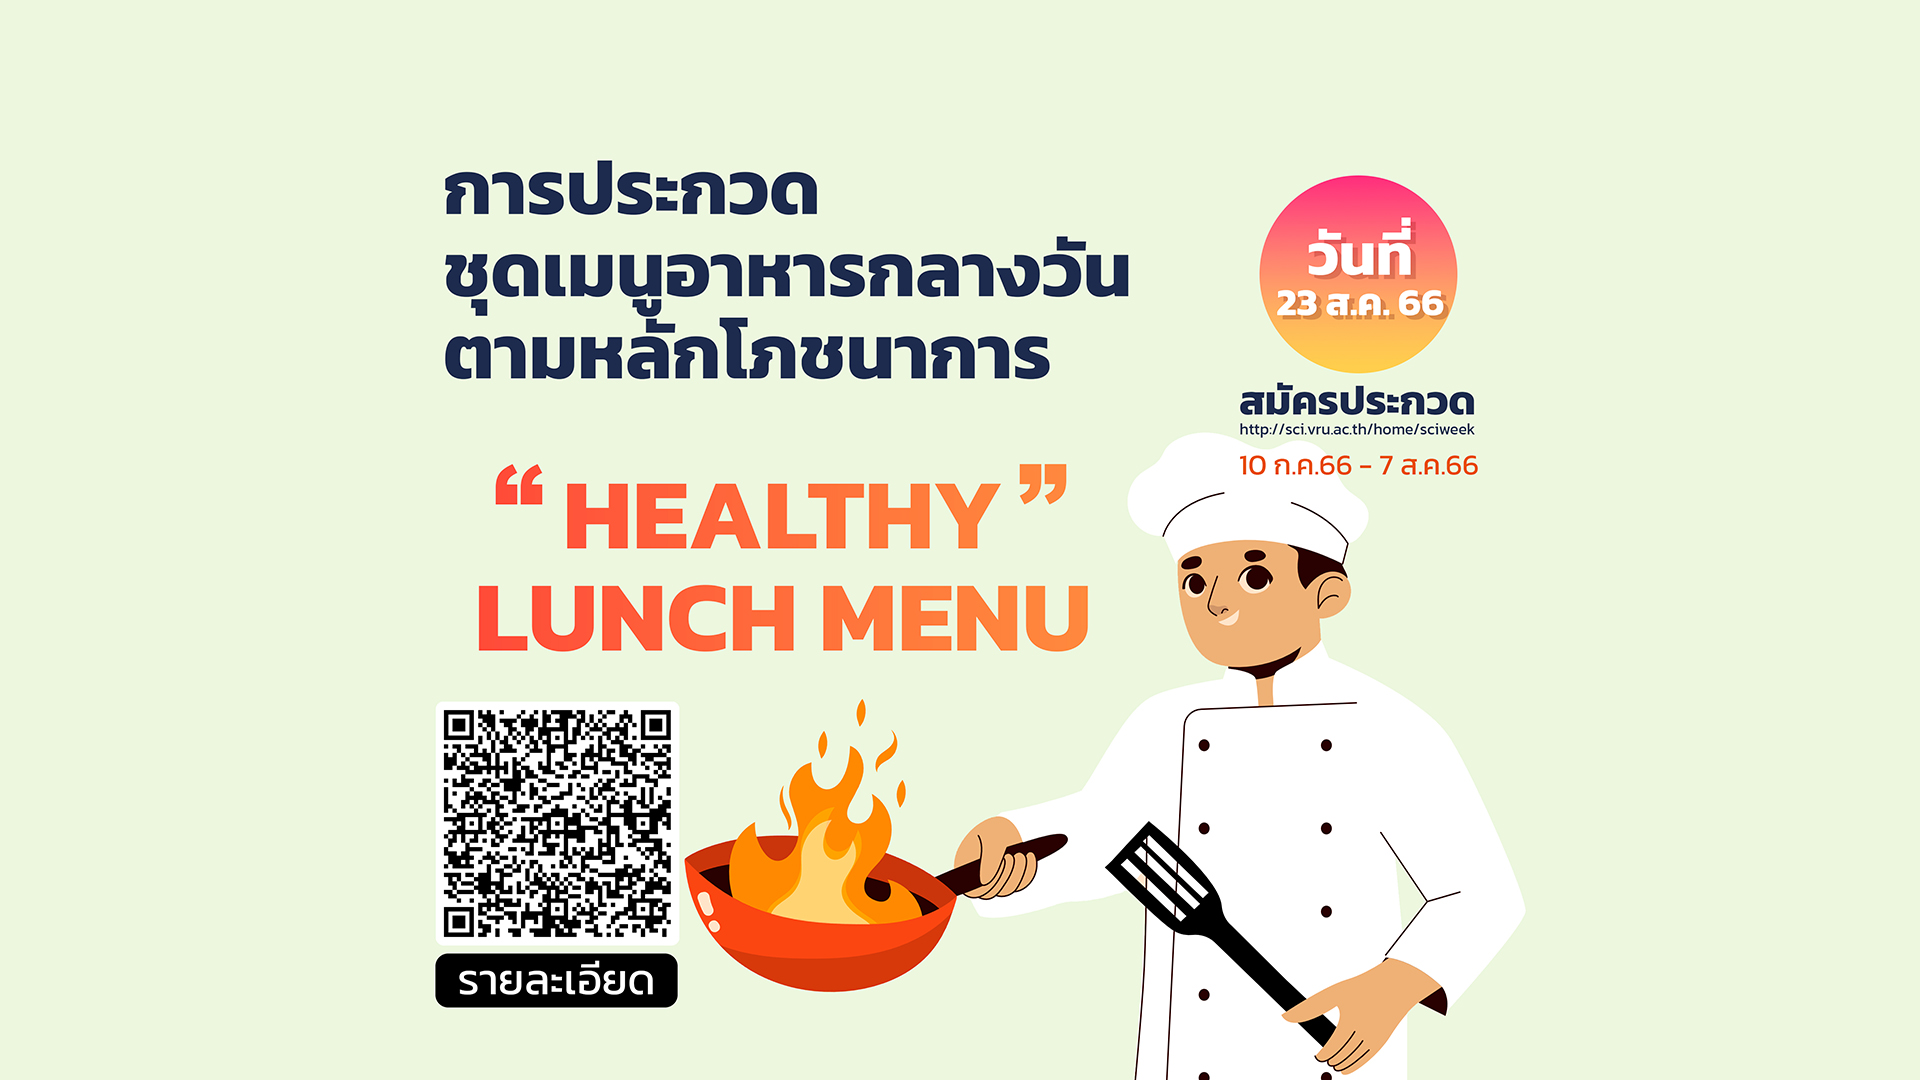 การประกวดแข่งขัน ชุดเมนูอาหารกลางวันตามหลักโภชนาการ “Healthy Lunch Menu